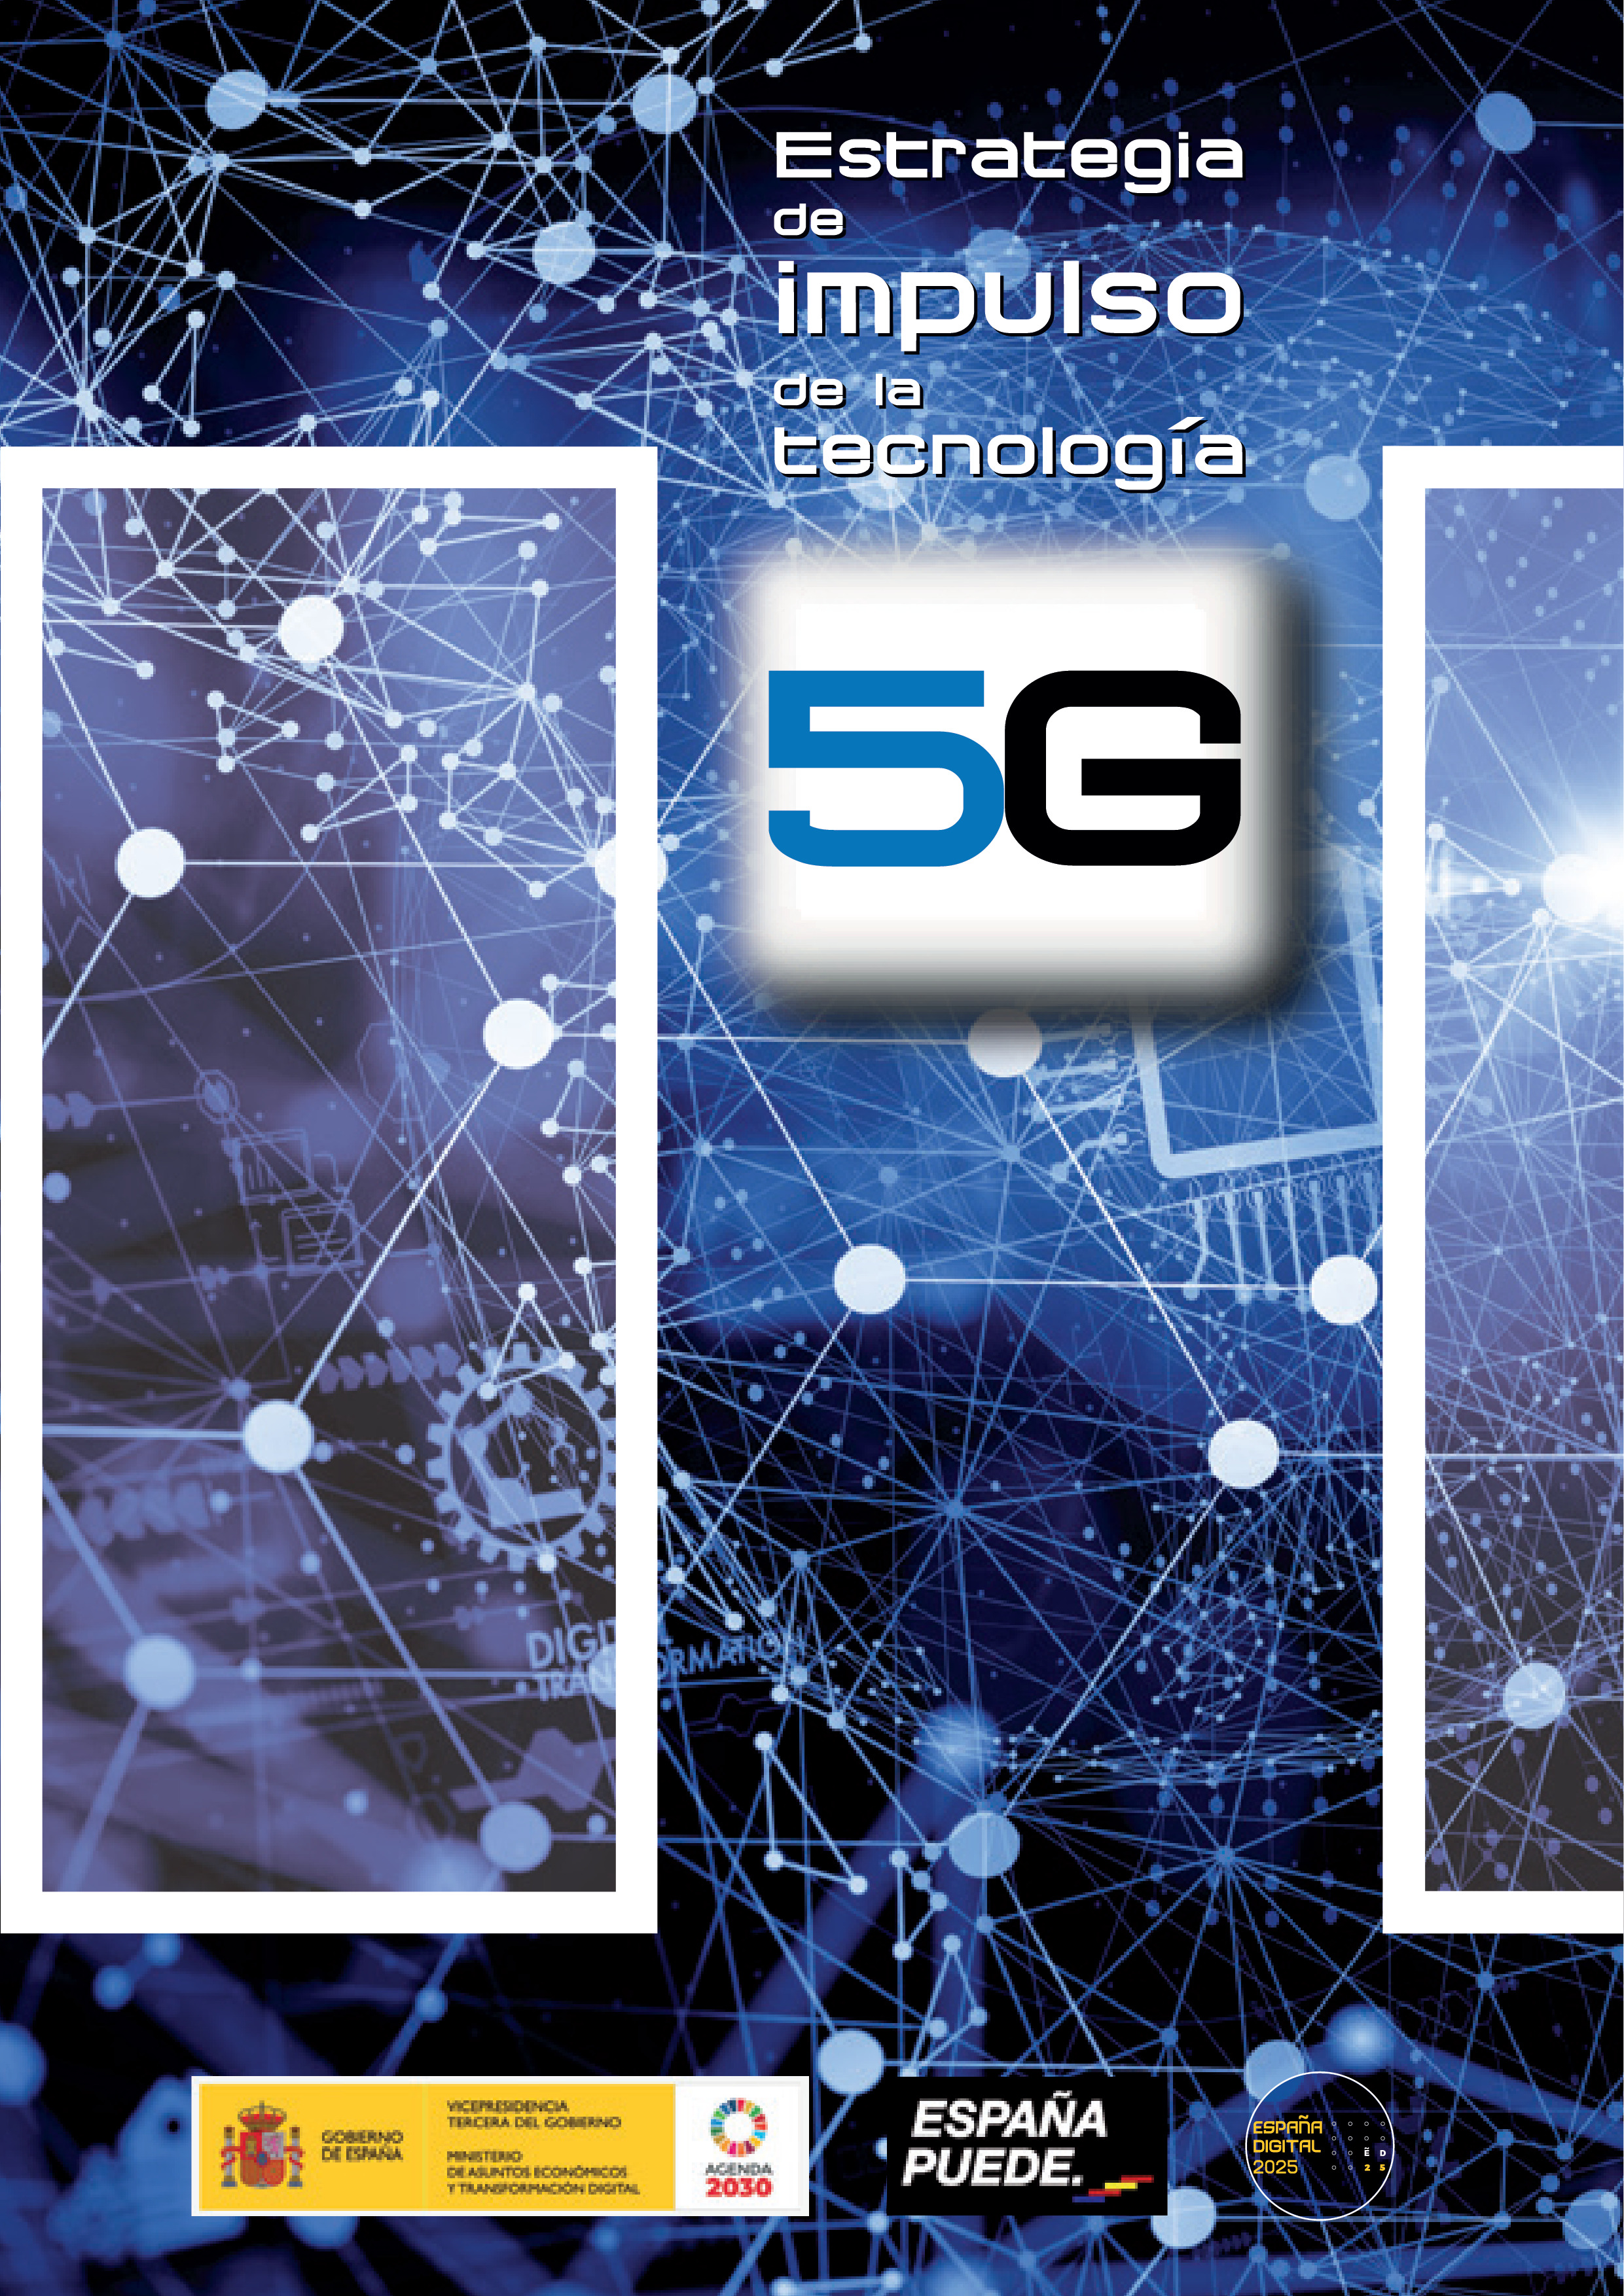 Icono Estrategia de impulso de la tecnologia 5G